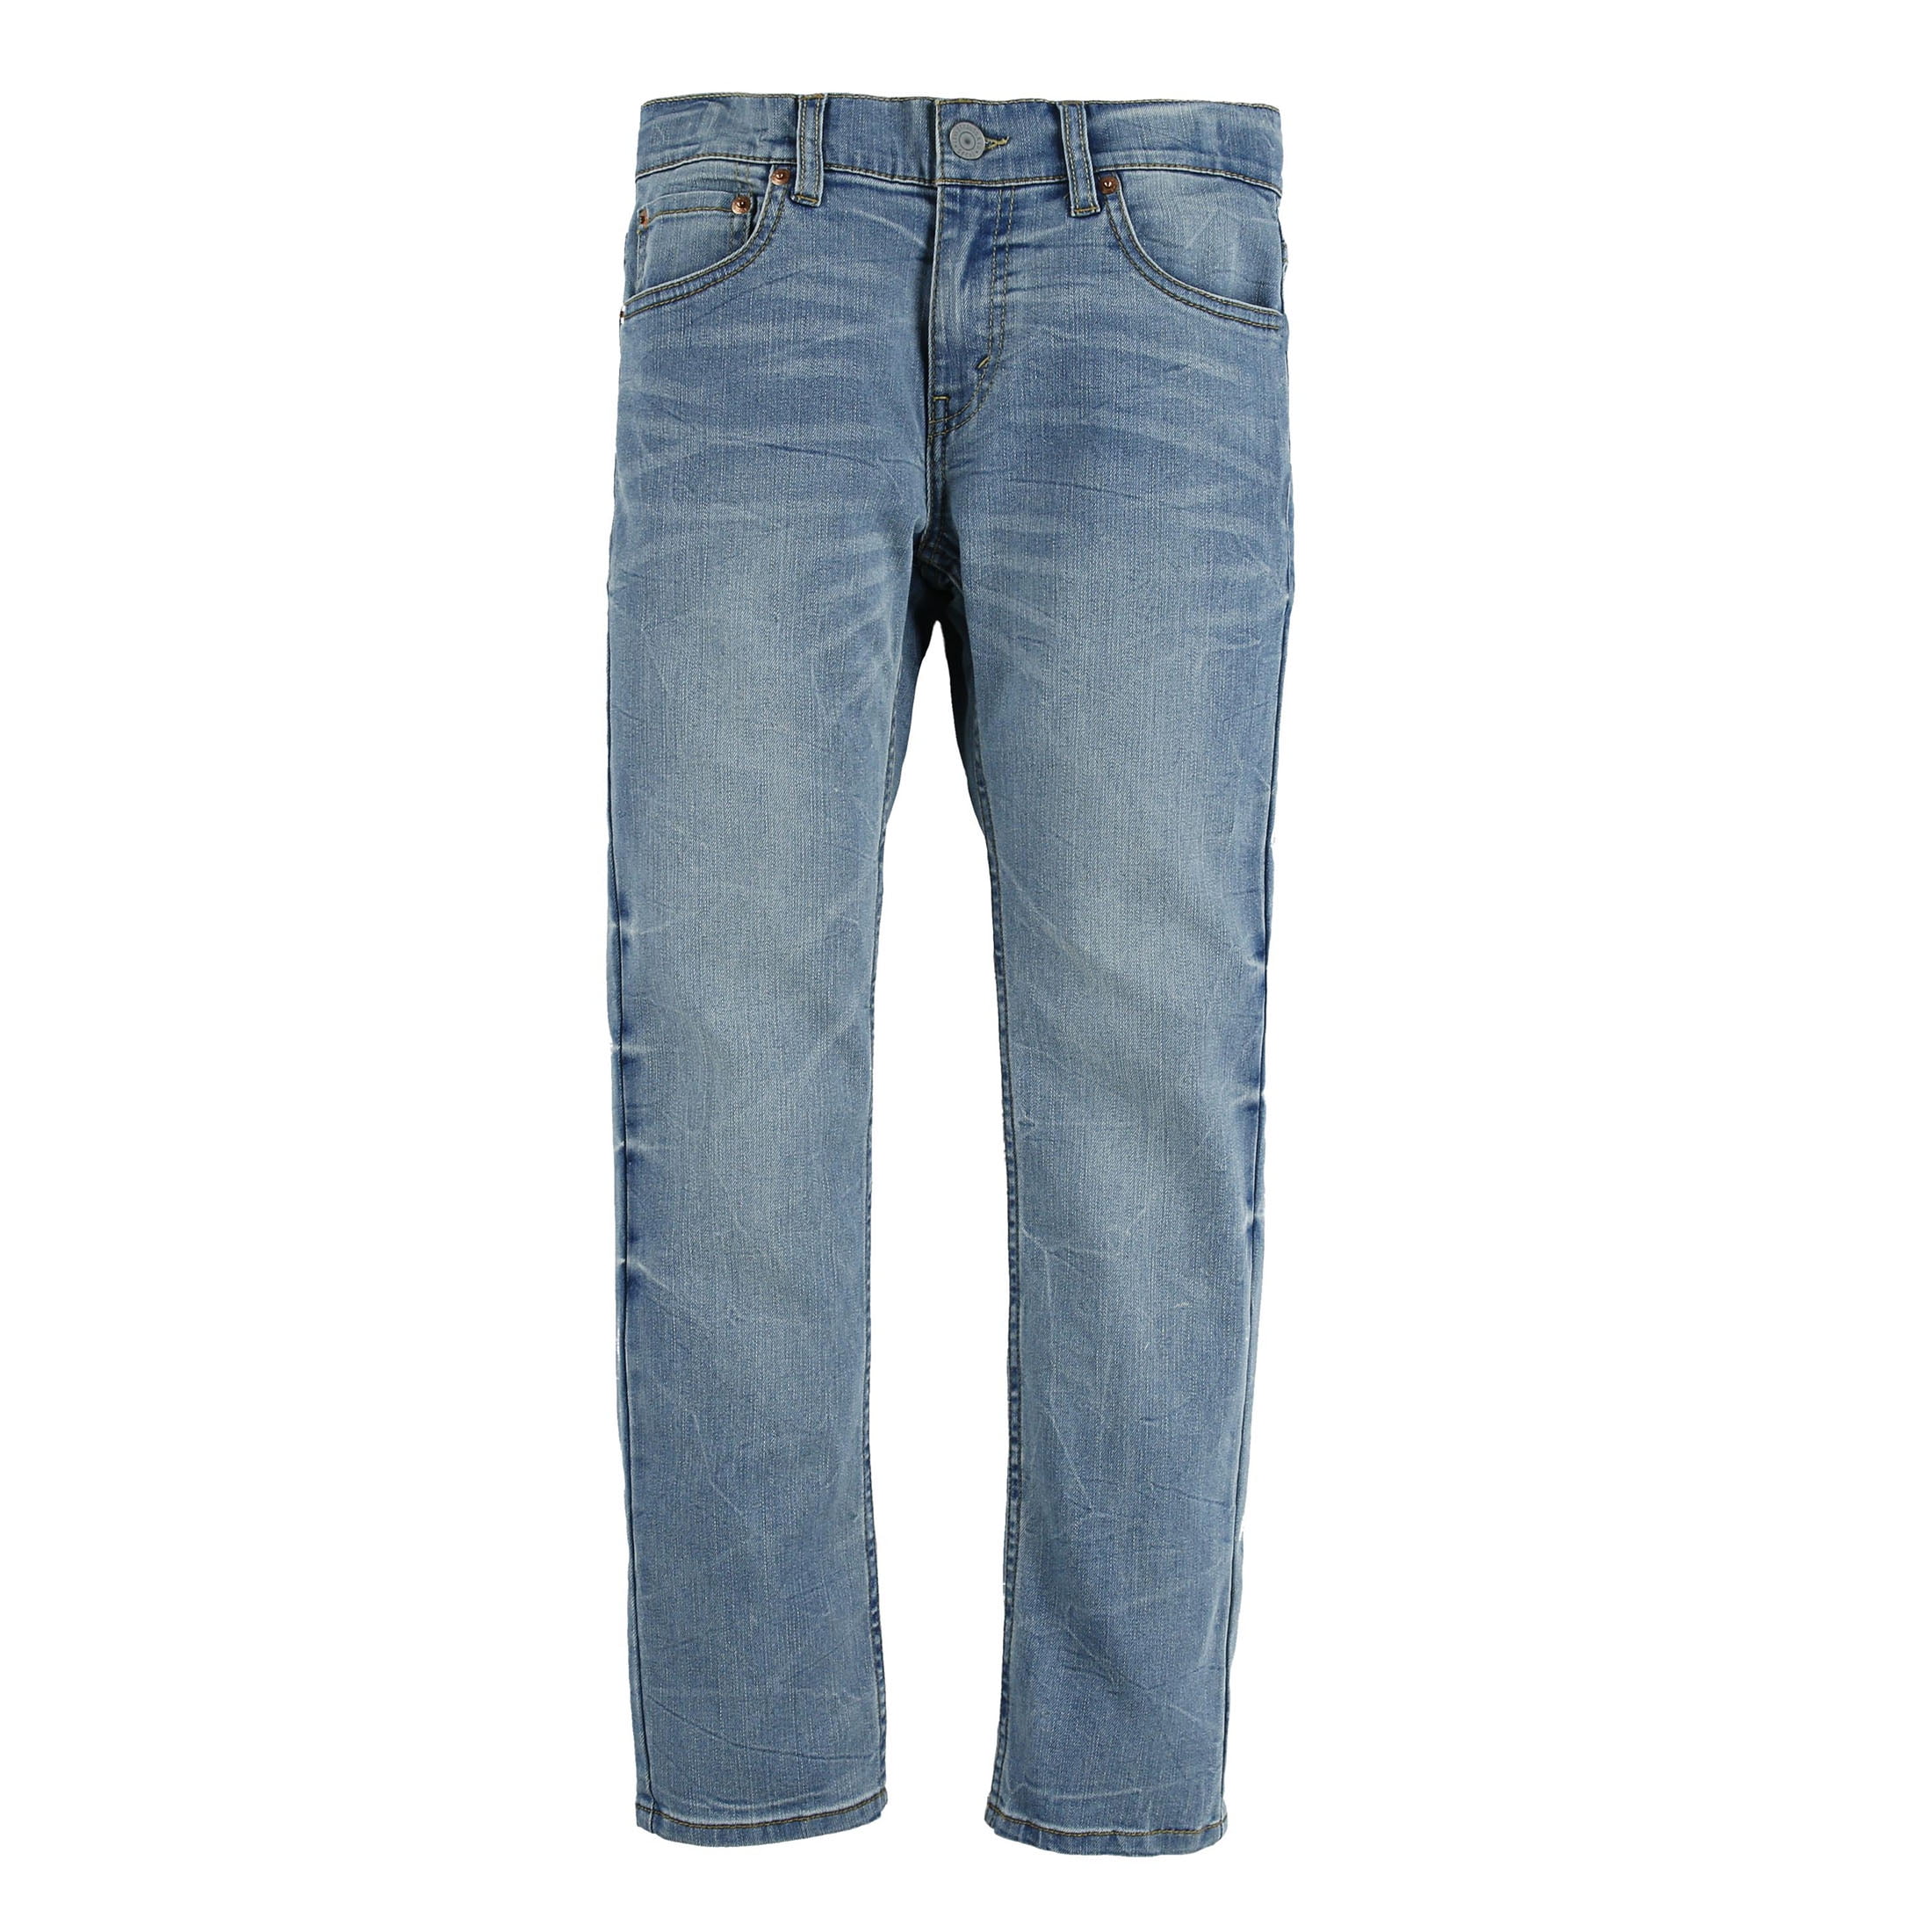 Levi's Boys' 511 Slim Fit Jeans, Sizes 4-20 - Walmart.com